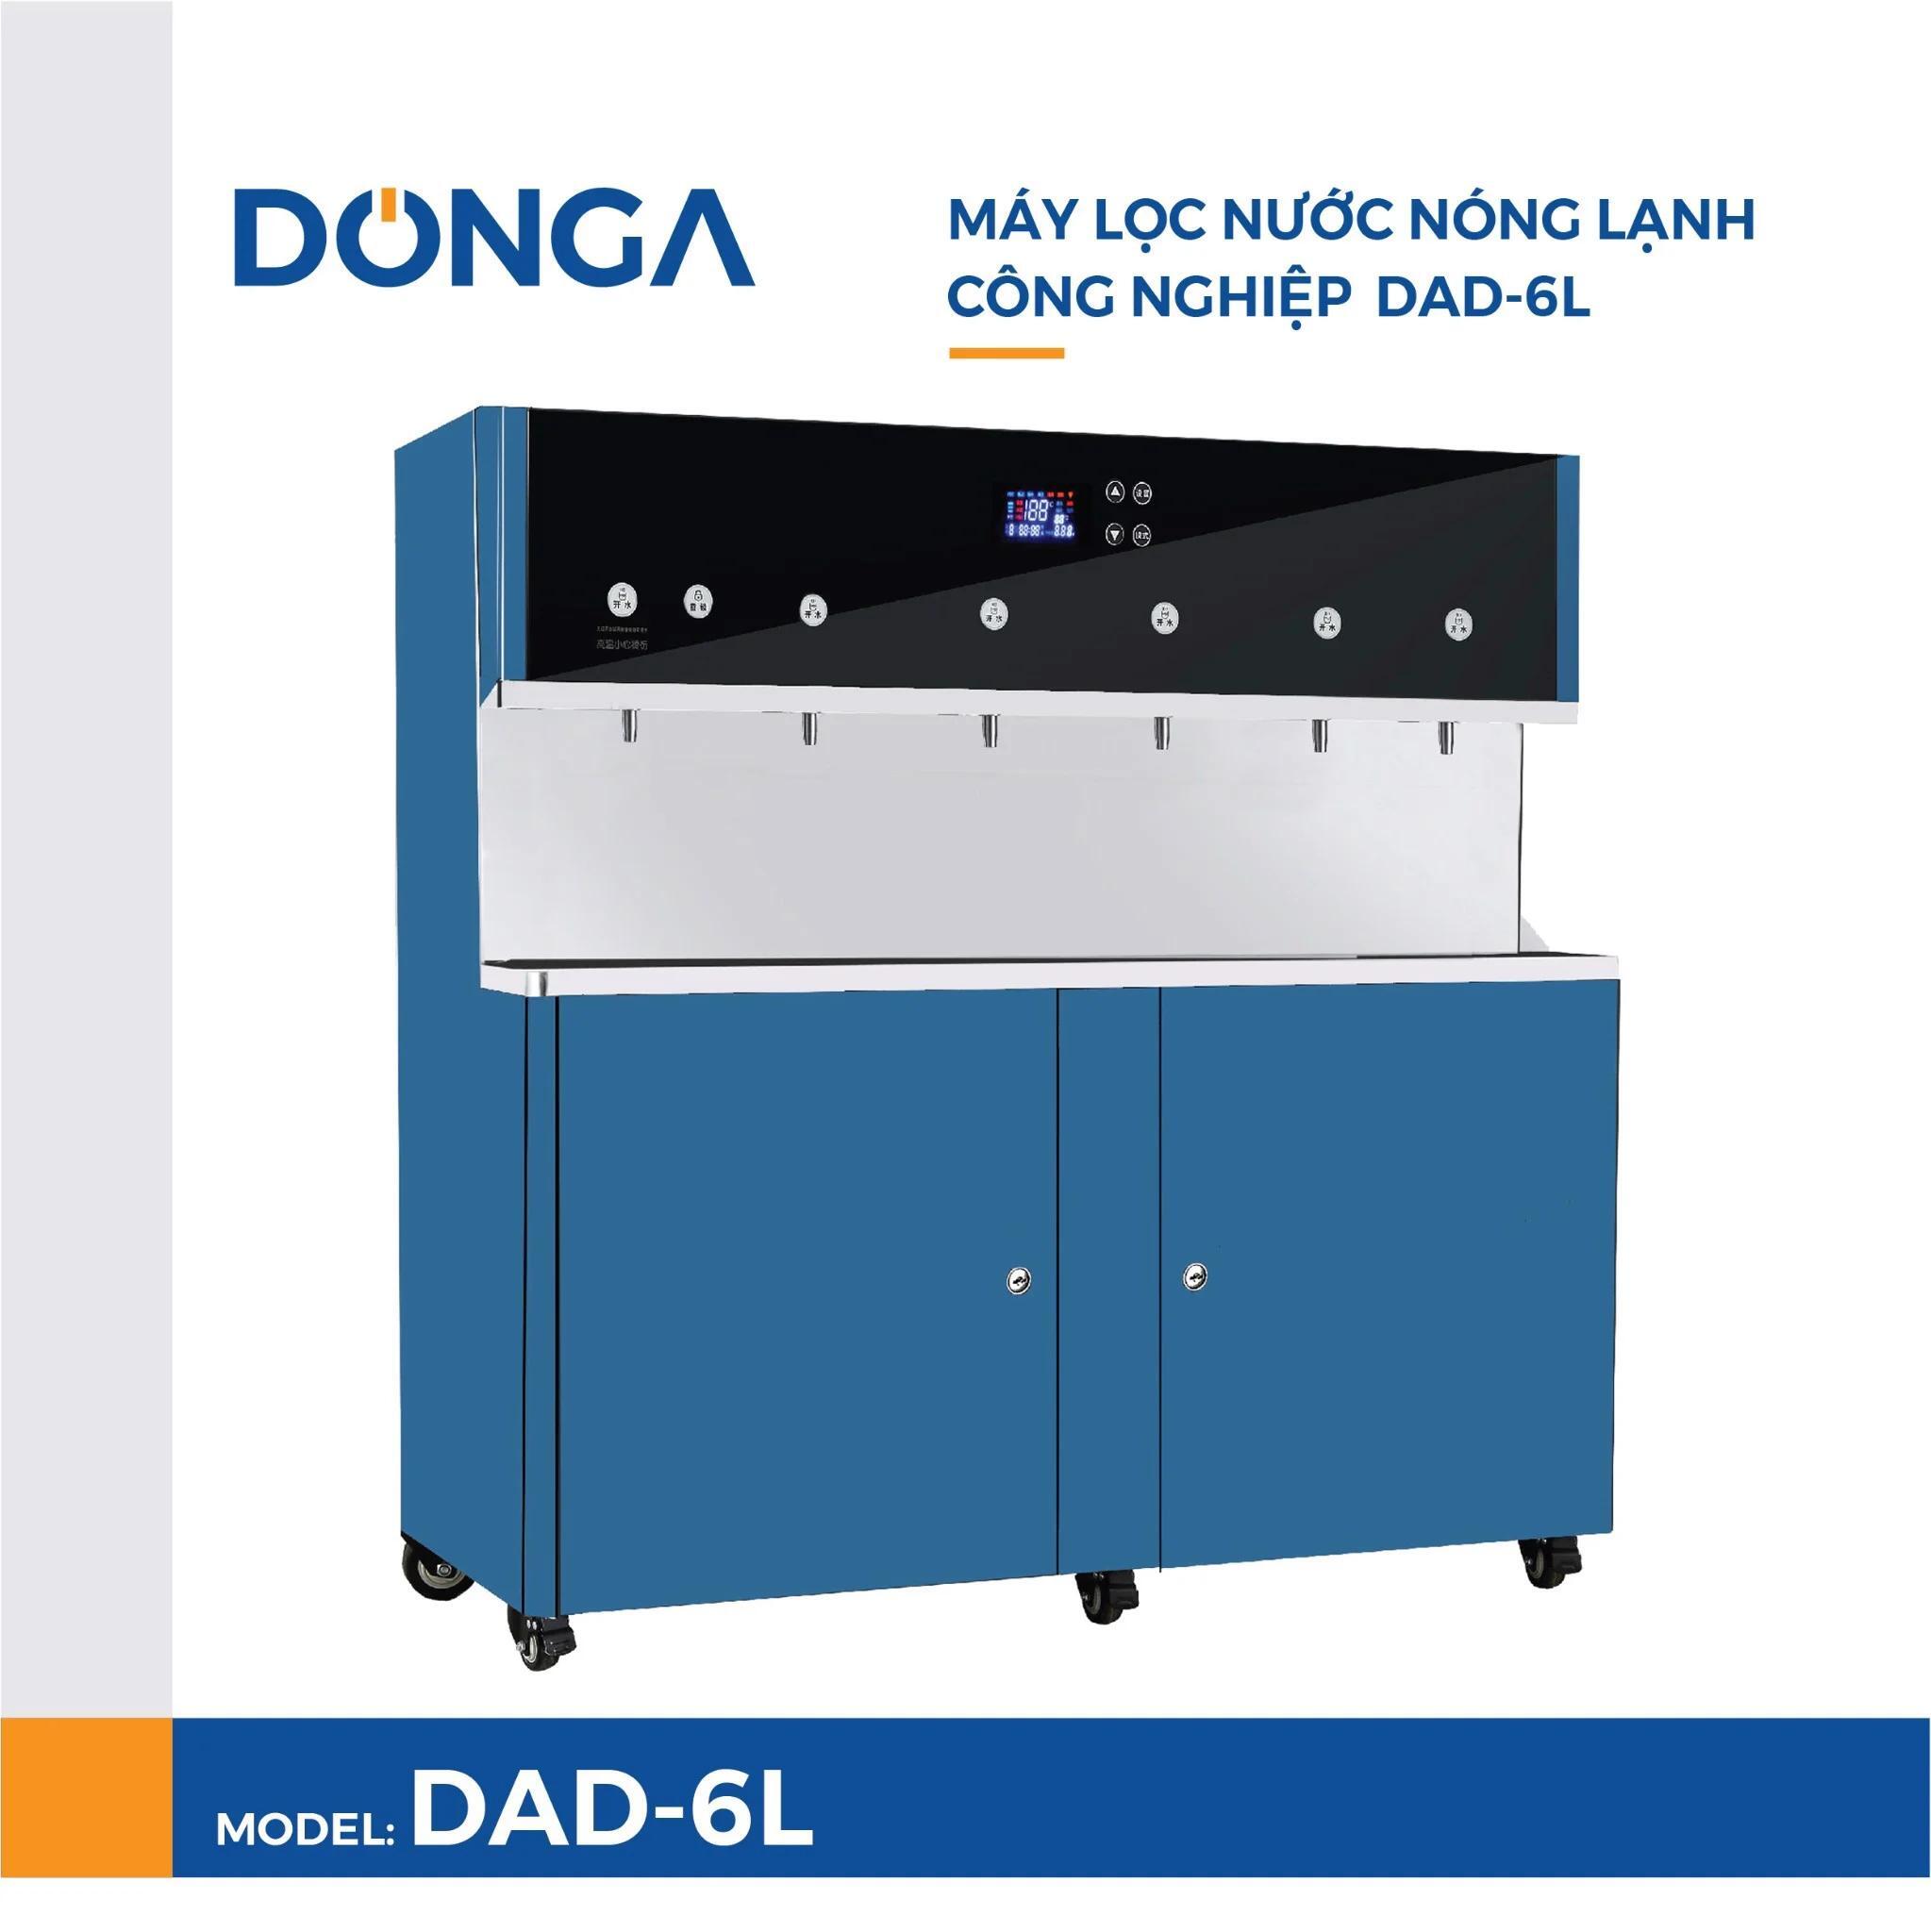 Máy lọc nước nóng lạnh công nghiệp cao cấp DONGA DAD-6L